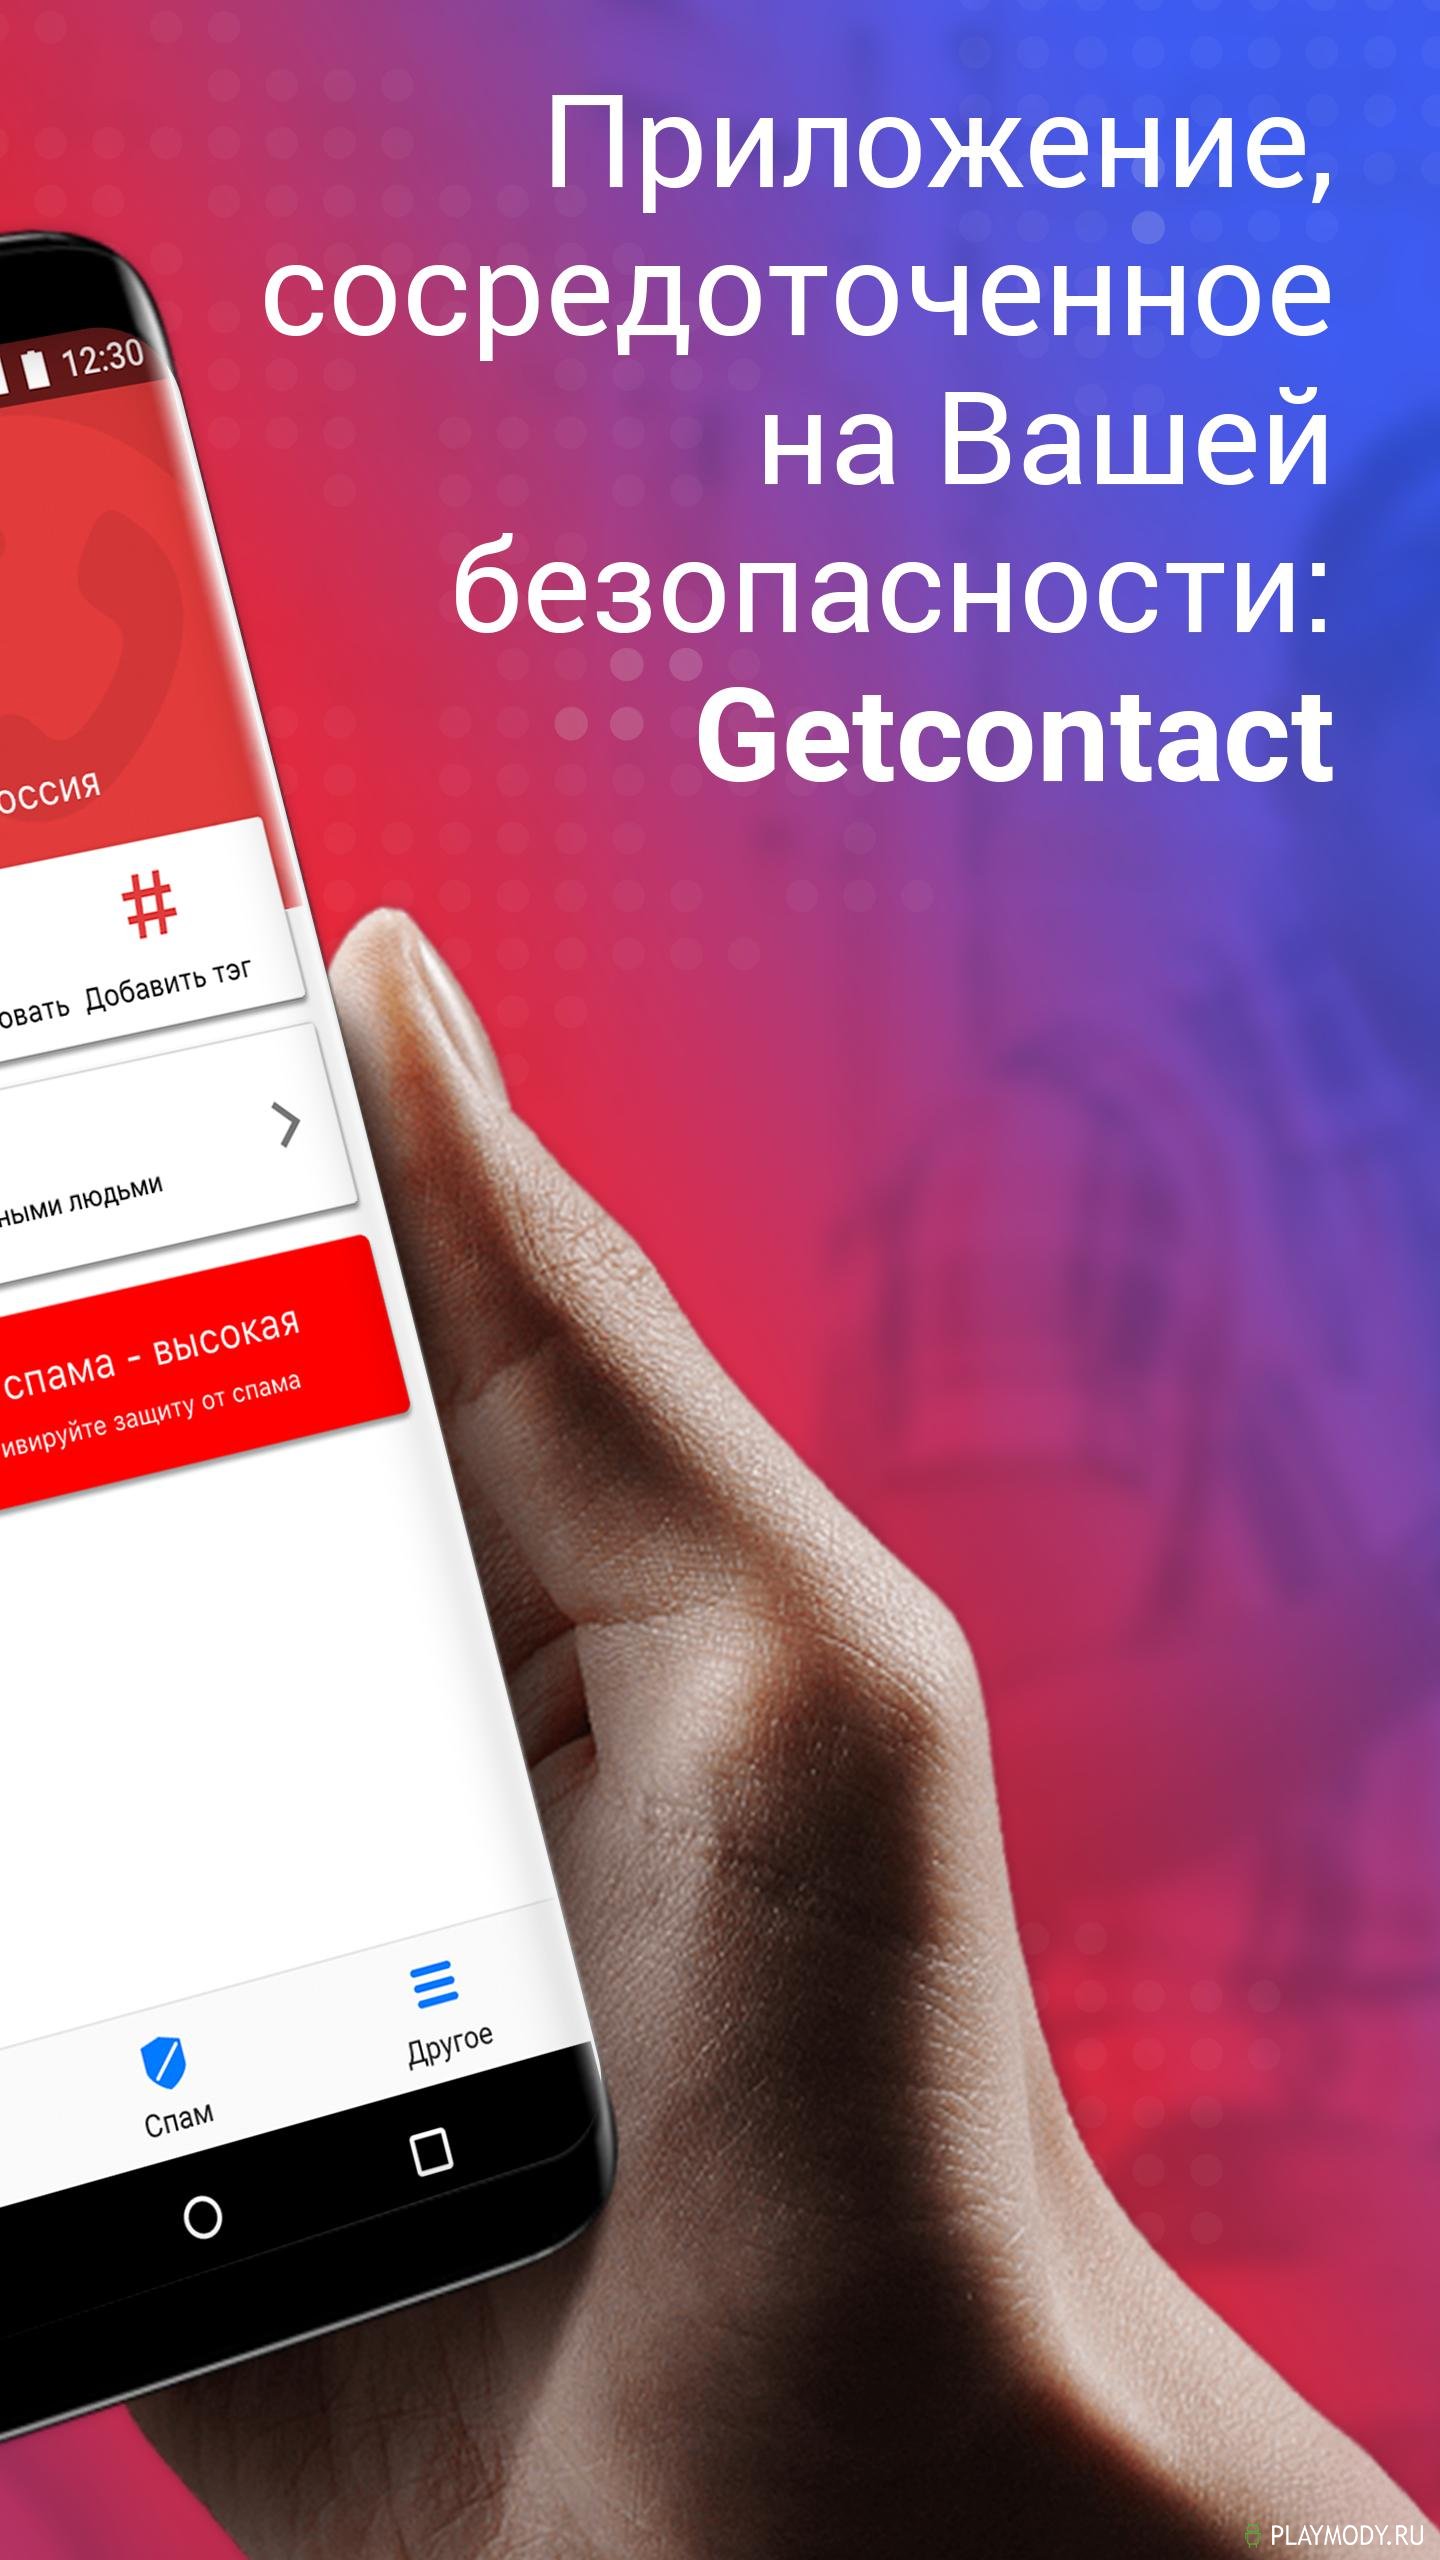 Установить приложение гетконтакт. Гетконтакт. Приложение get contact. Гетконтакт премиум. Get contact реклама.